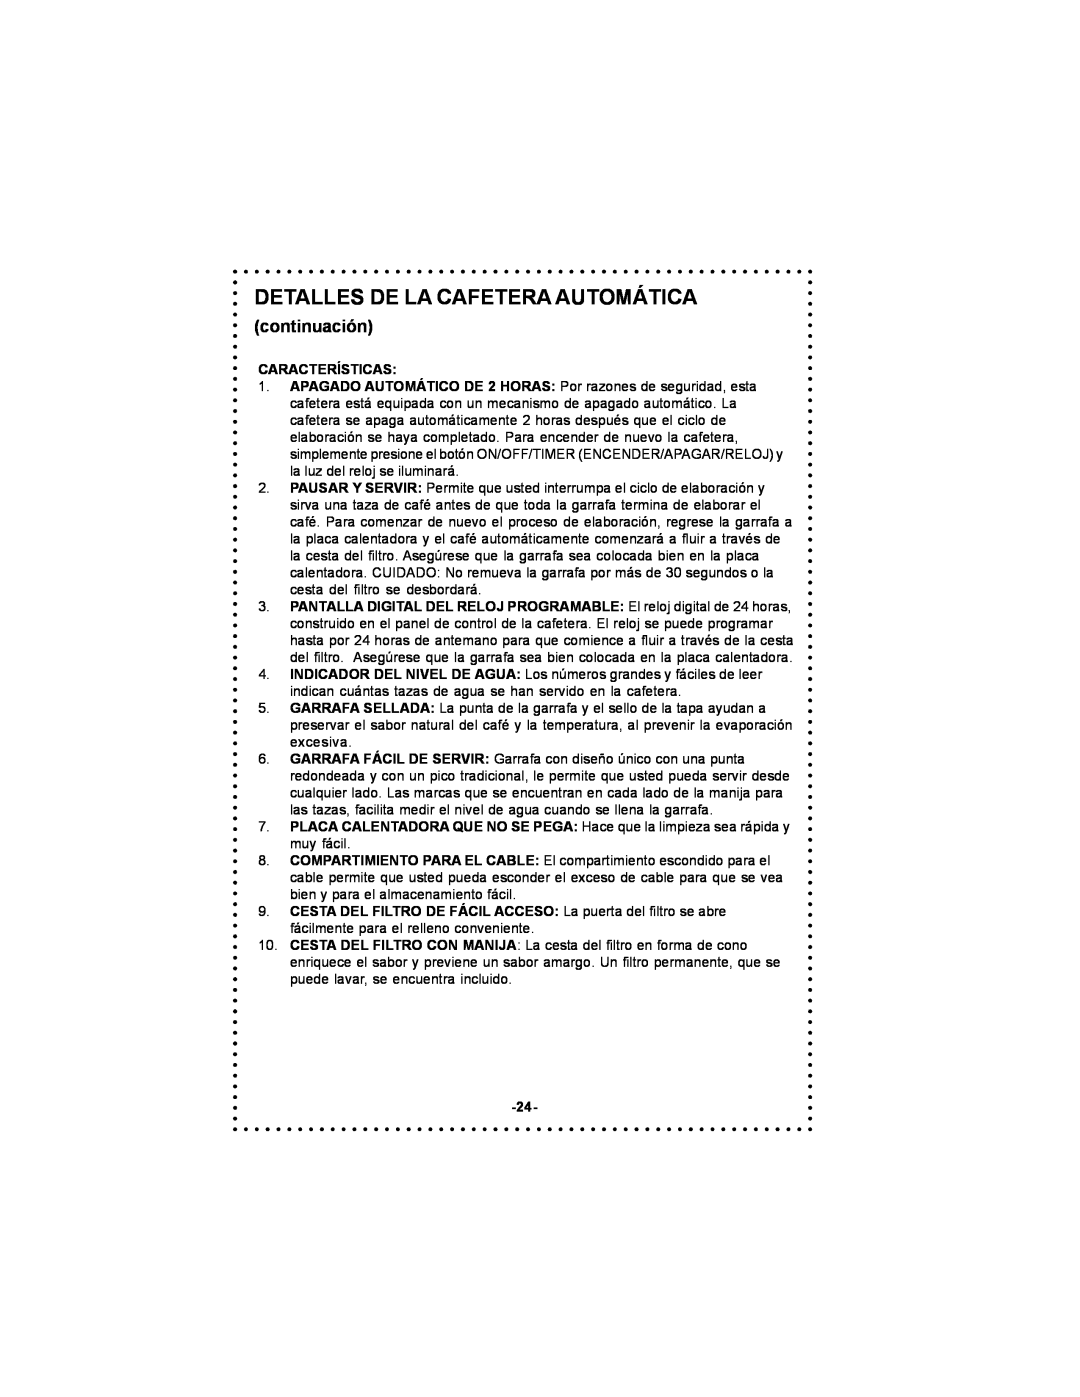 DeLonghi DC59TW instruction manual continuación, Detalles De La Cafetera Automática, Características 